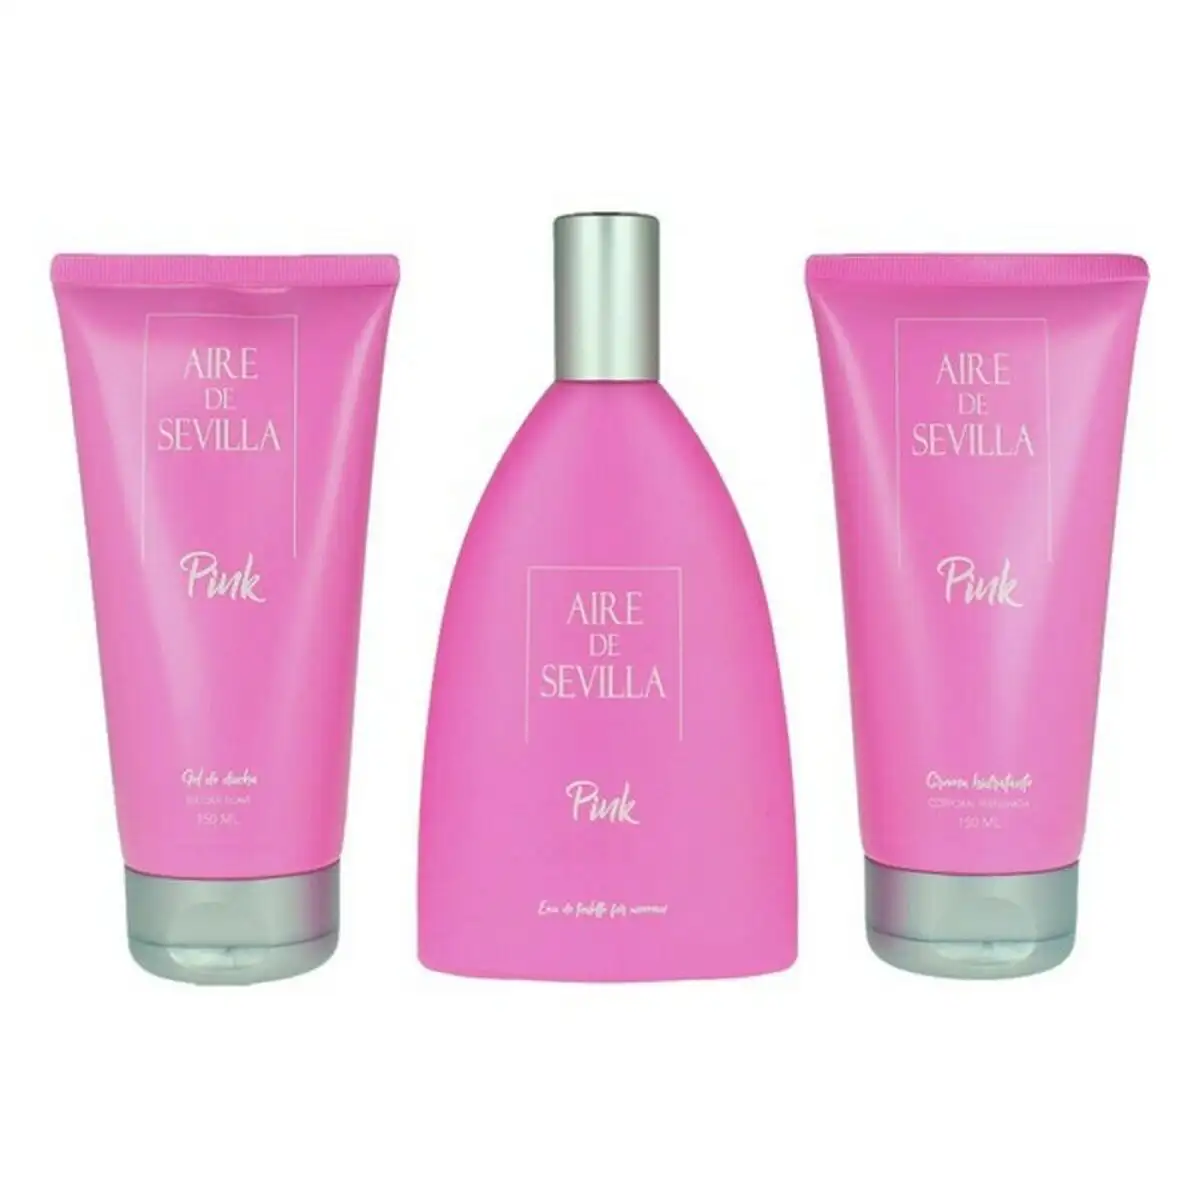 Set de parfum femme pink aire sevilla edt 3 pcs 3 pcs _6776. DIAYTAR SENEGAL - Où Choisir Devient une Découverte. Explorez notre boutique en ligne et trouvez des articles qui vous surprennent et vous ravissent à chaque clic.